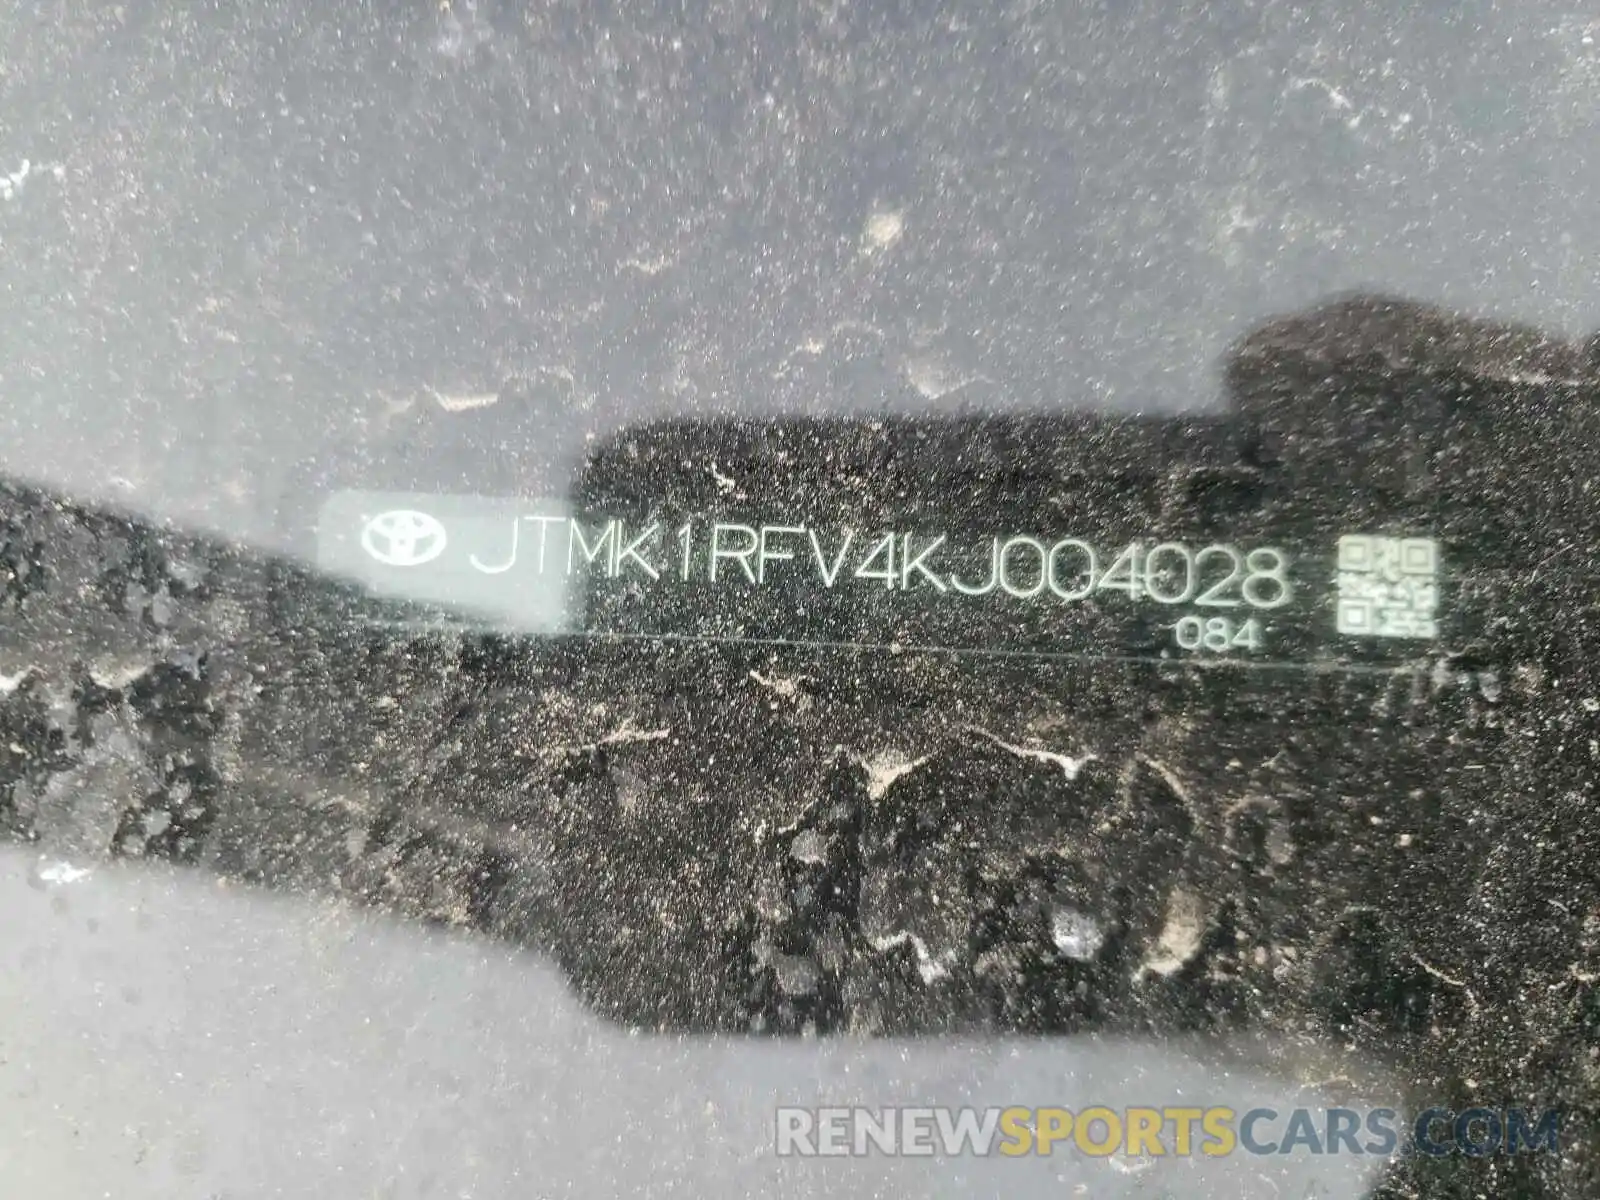 10 Photograph of a damaged car JTMK1RFV4KJ004028 TOYOTA RAV4 2019